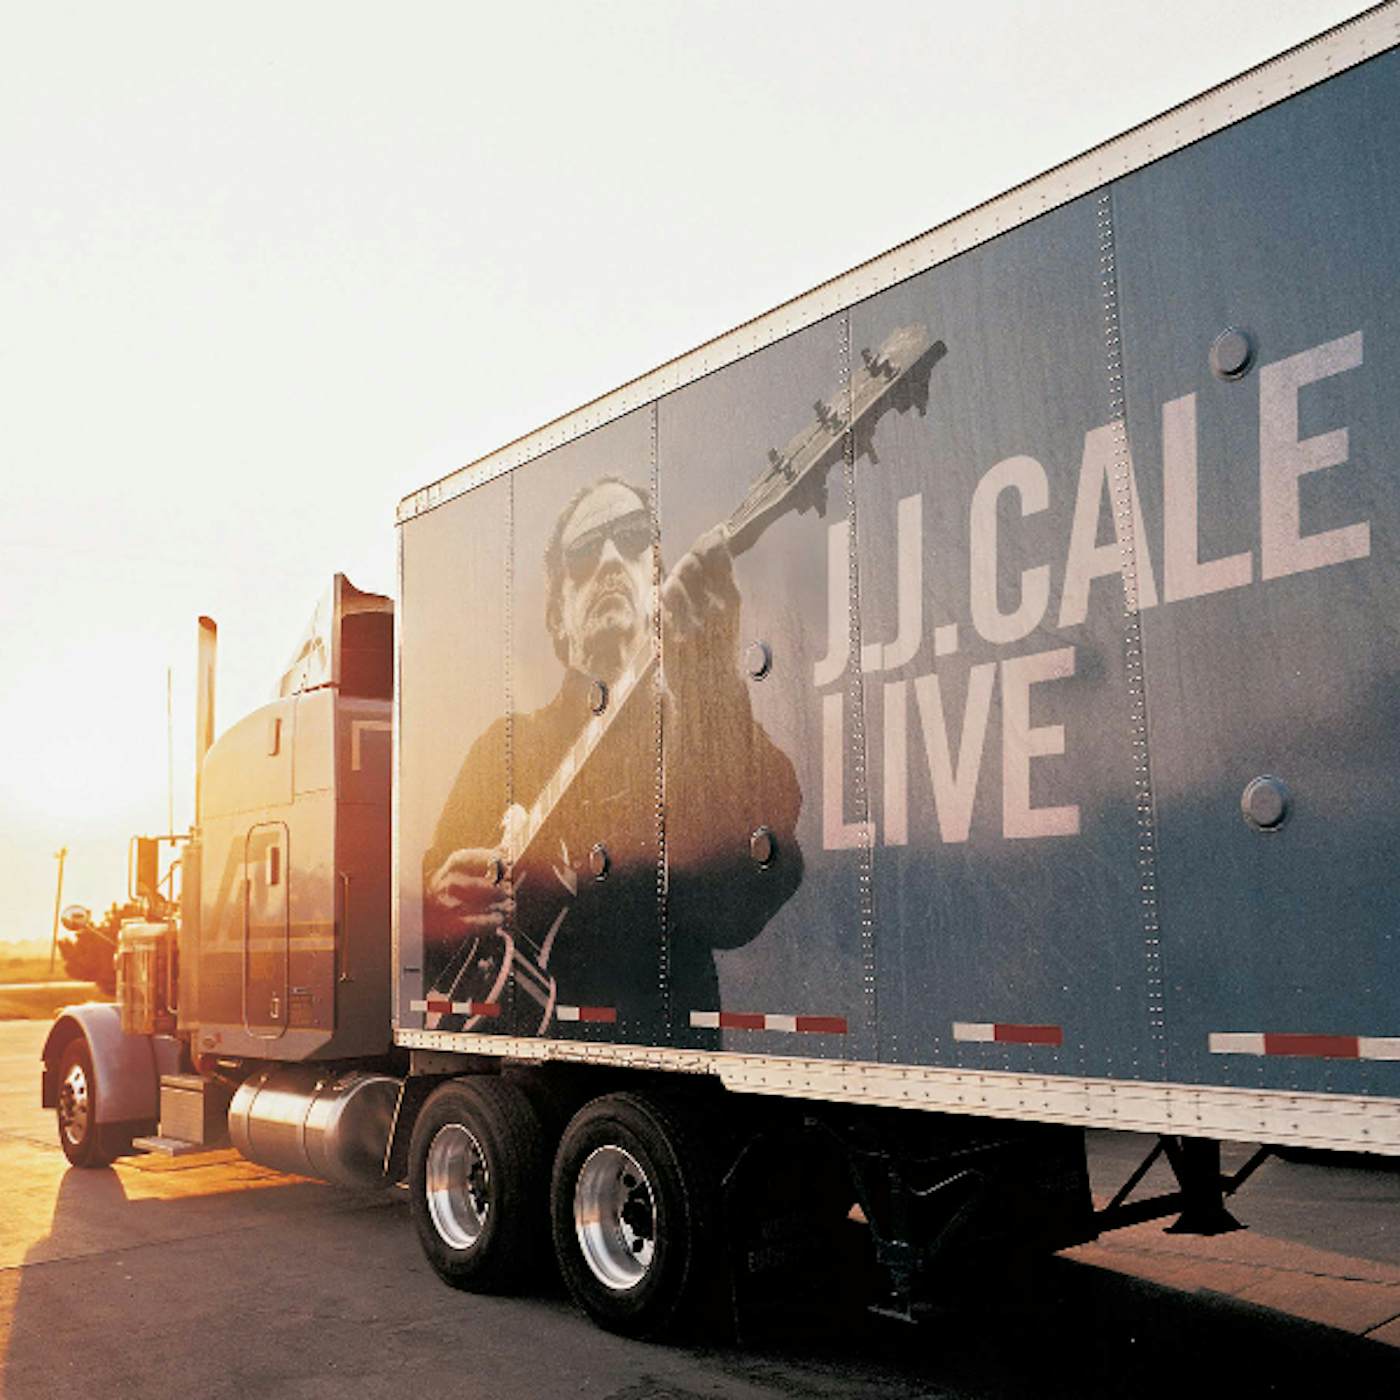 J.J. Cale Live Vinyl Record